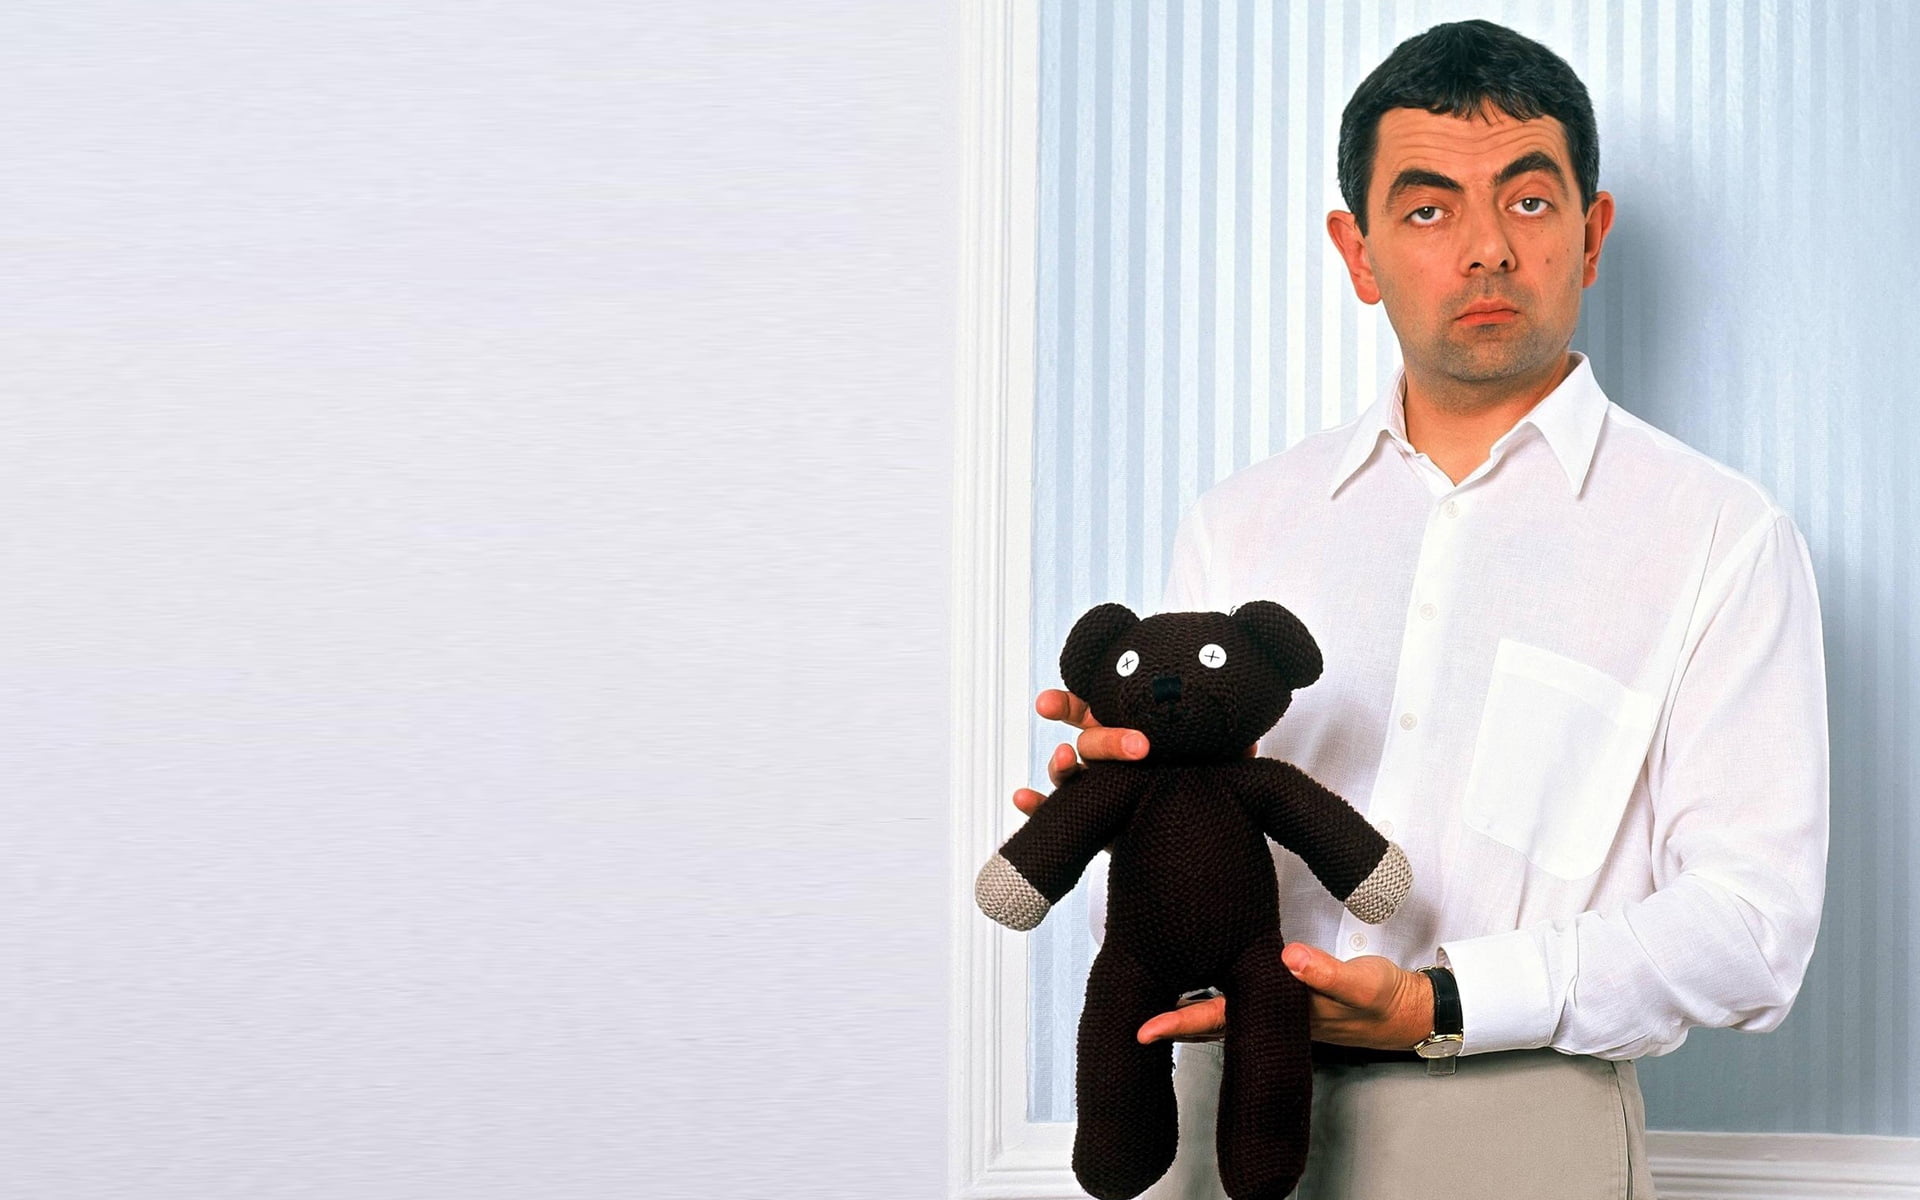 Mr. Bean with Teddy, mr bean, rowan atkinson, teddy bear, men